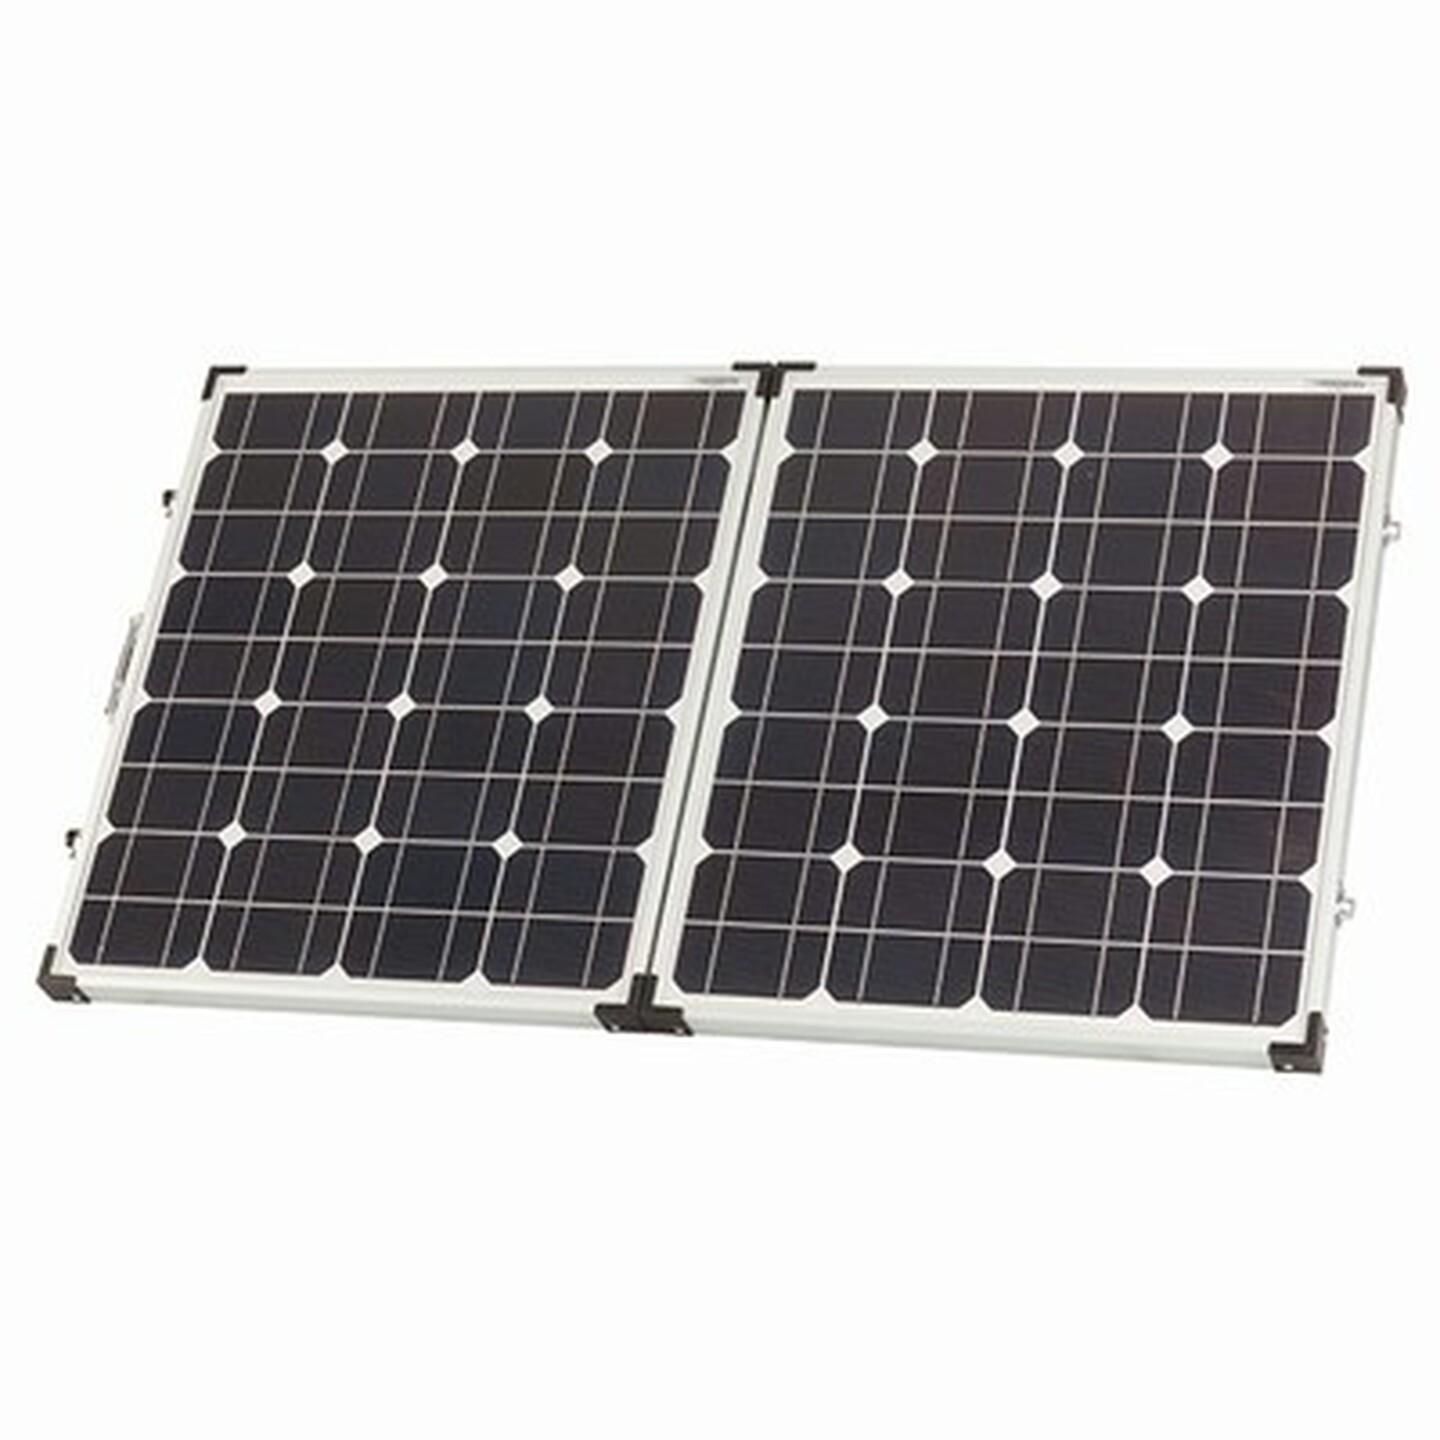 Manufacturer Refurbished 80W Portable Fold-Up Solar Panel